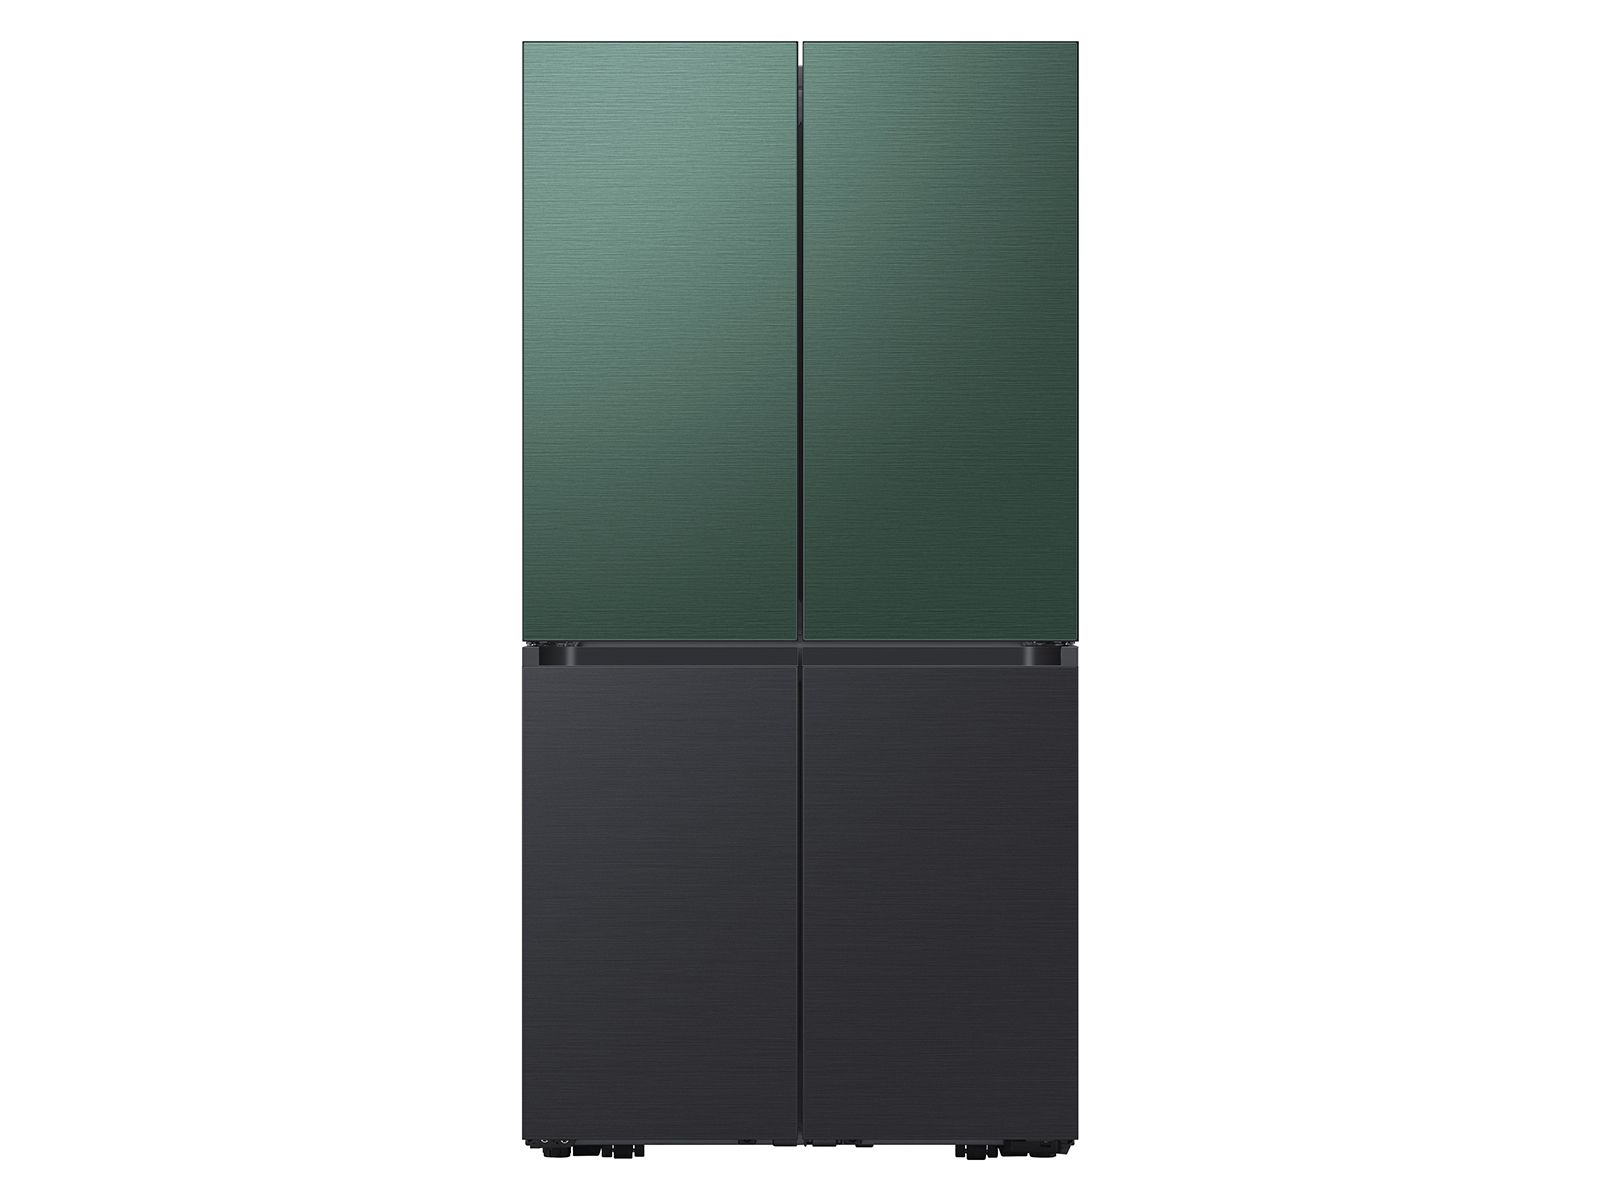 Thumbnail image of Bespoke 4-Door Flex&trade; Refrigerator Panel in Emerald Green Steel - Top Panel